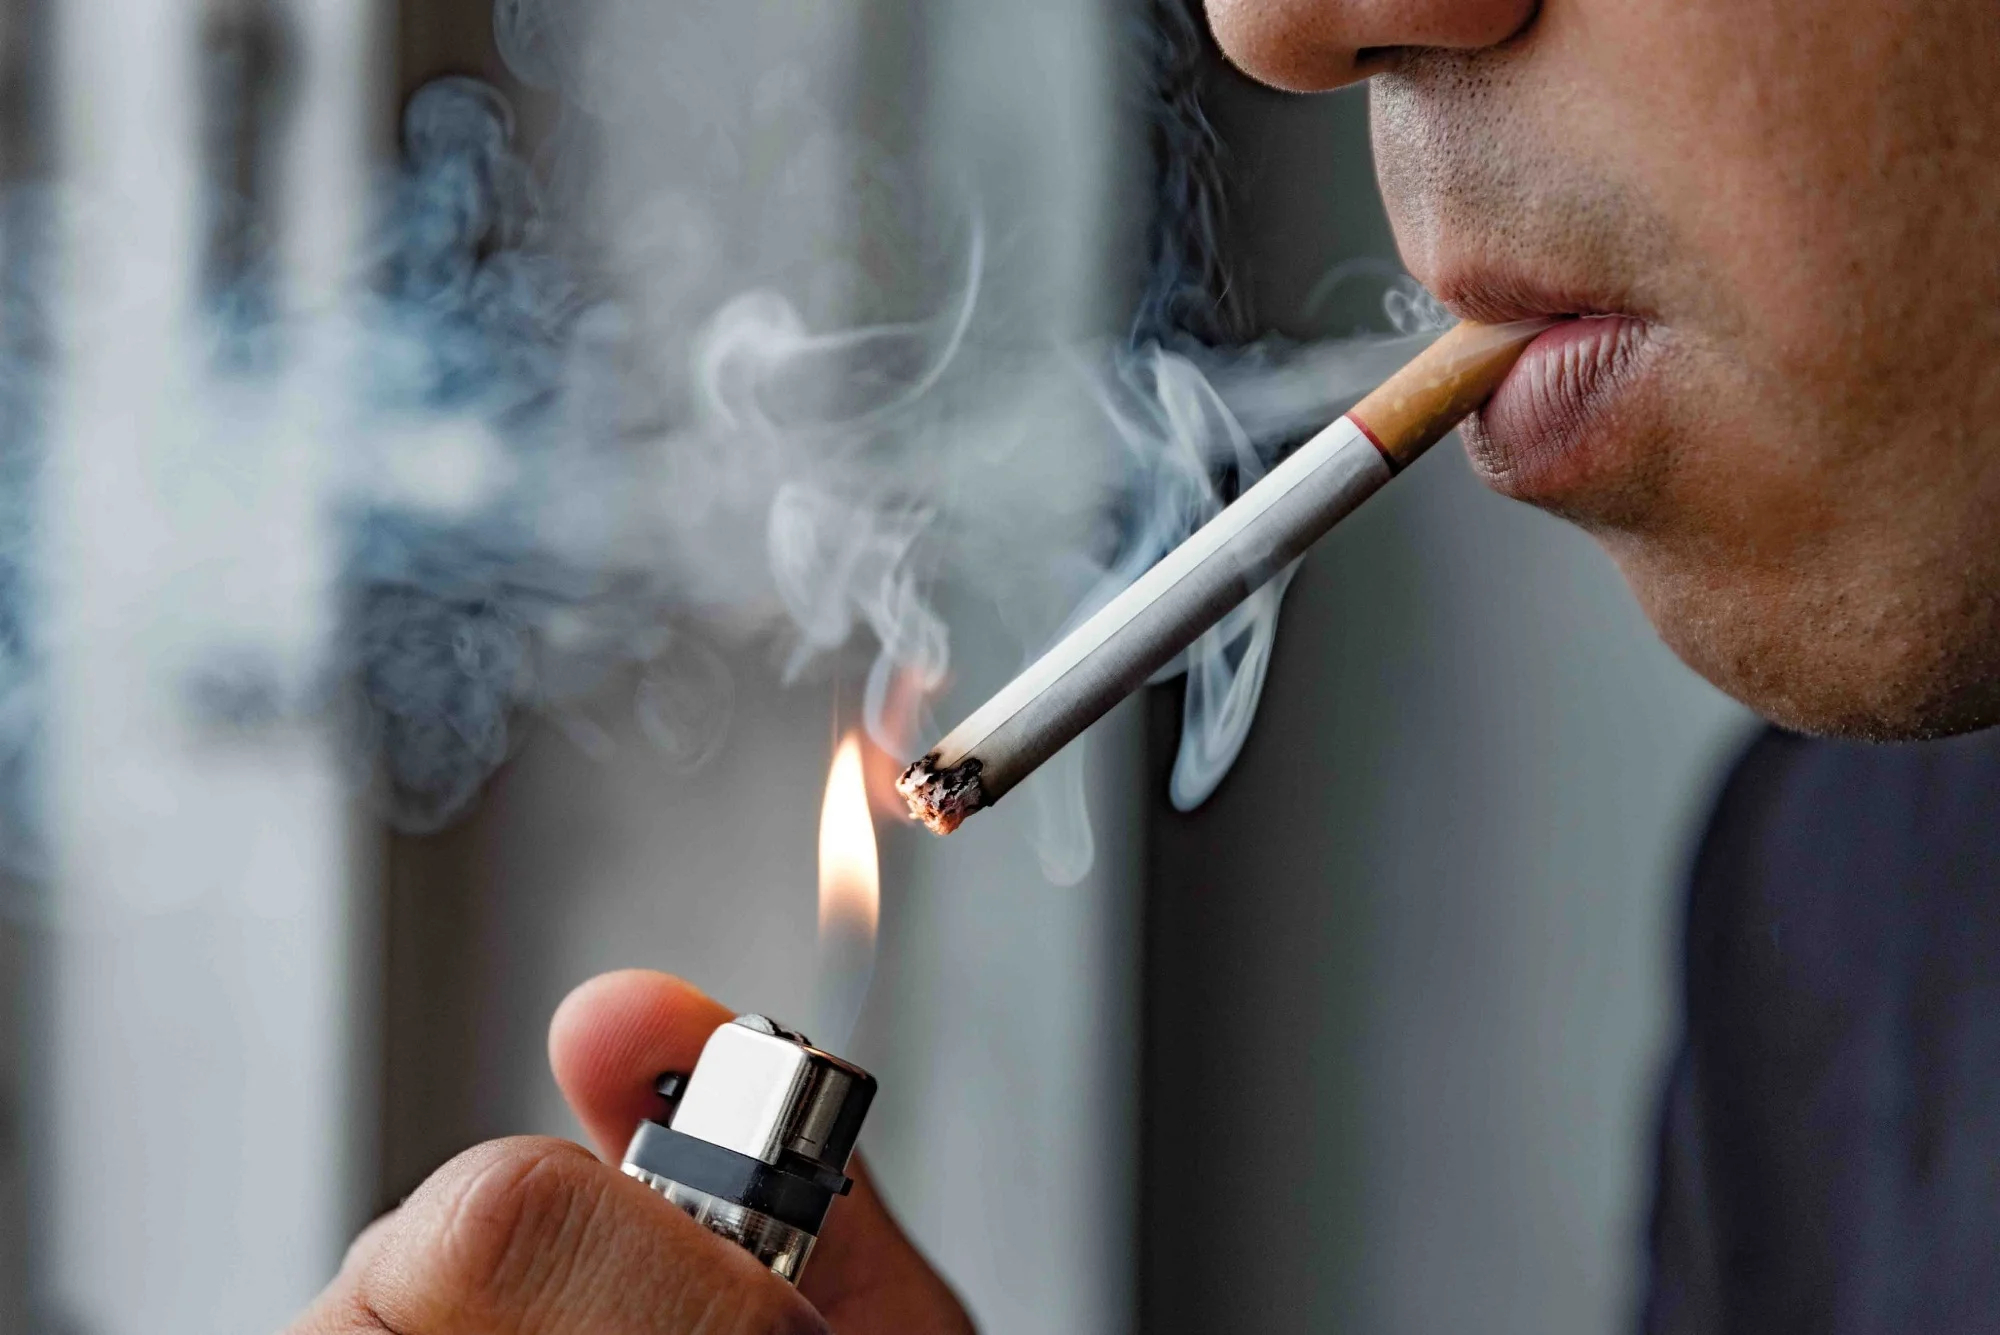 مساهمة التدخين في تلوث الهواء والأمراض تُقسم آراء خبراء بالمناظرة الإفريقية بمراكش